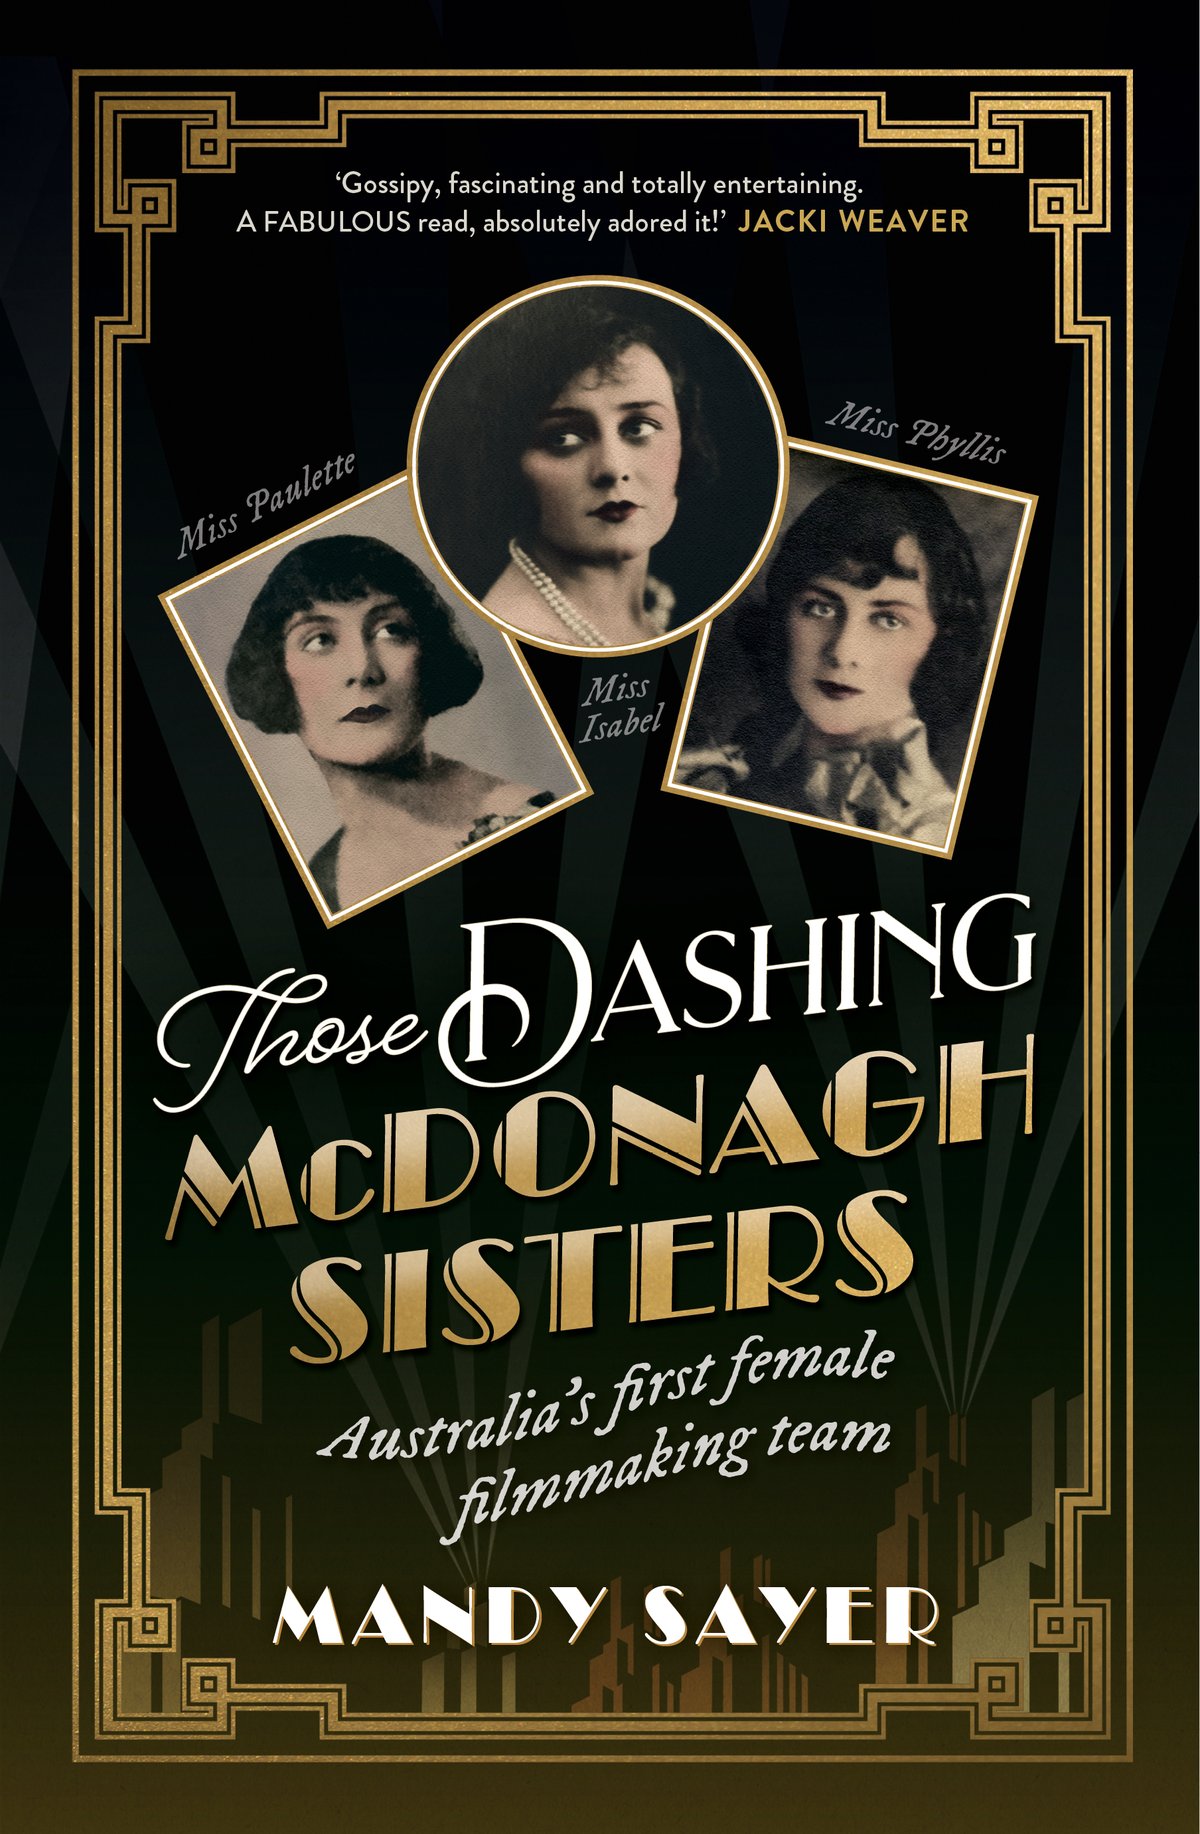 Those Dashing McDonagh Sisters